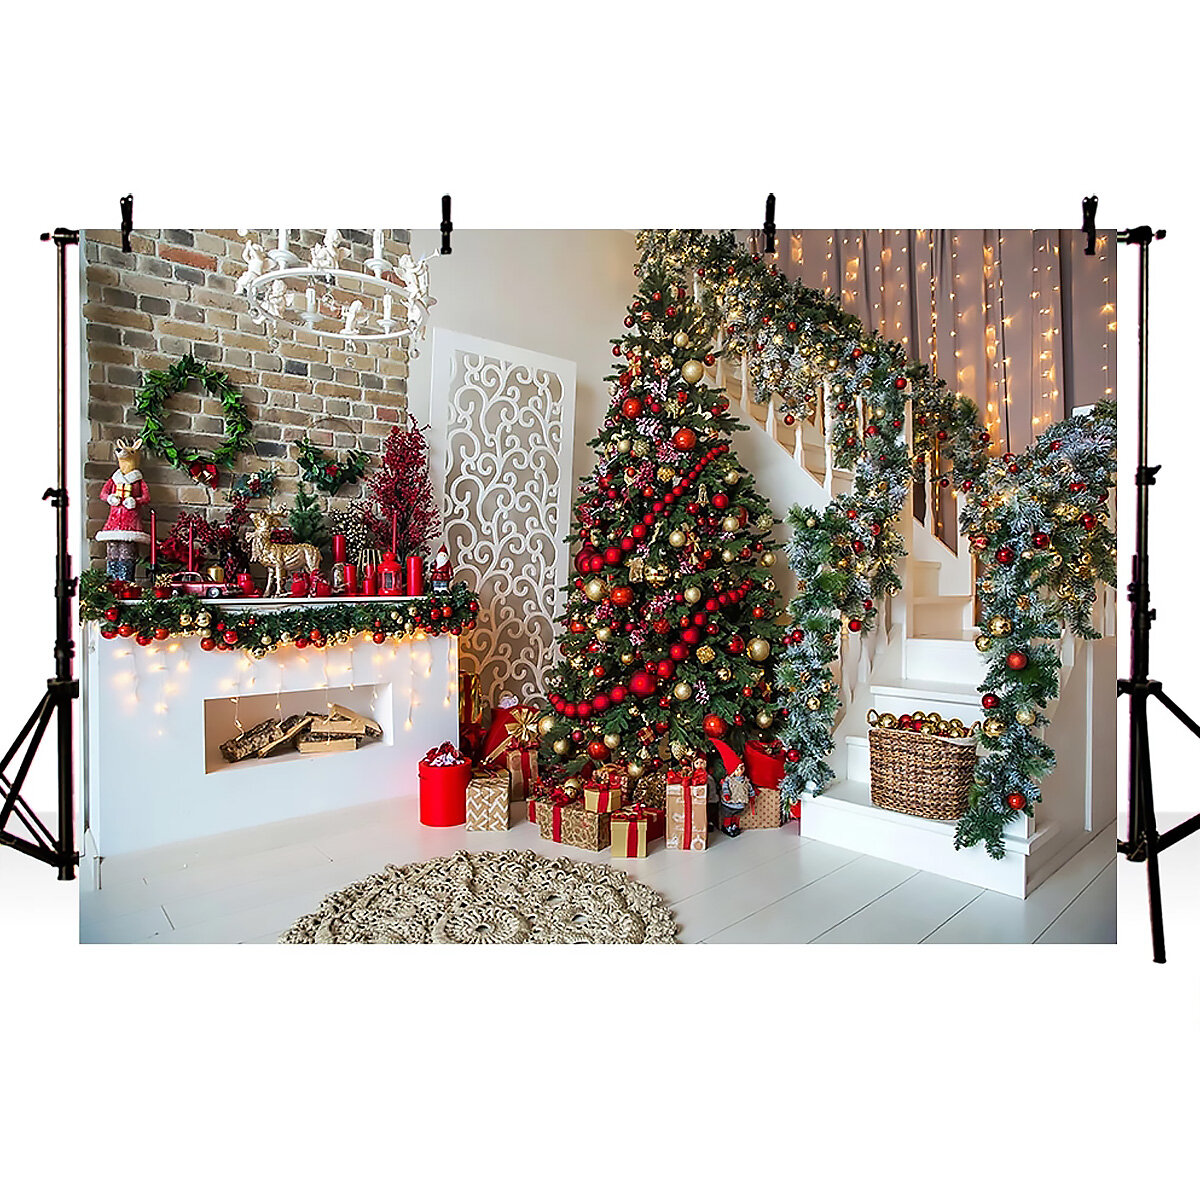 

Рождественская елка лестница фото фоны деревянный пол камин фон ткань для фотостудии фон